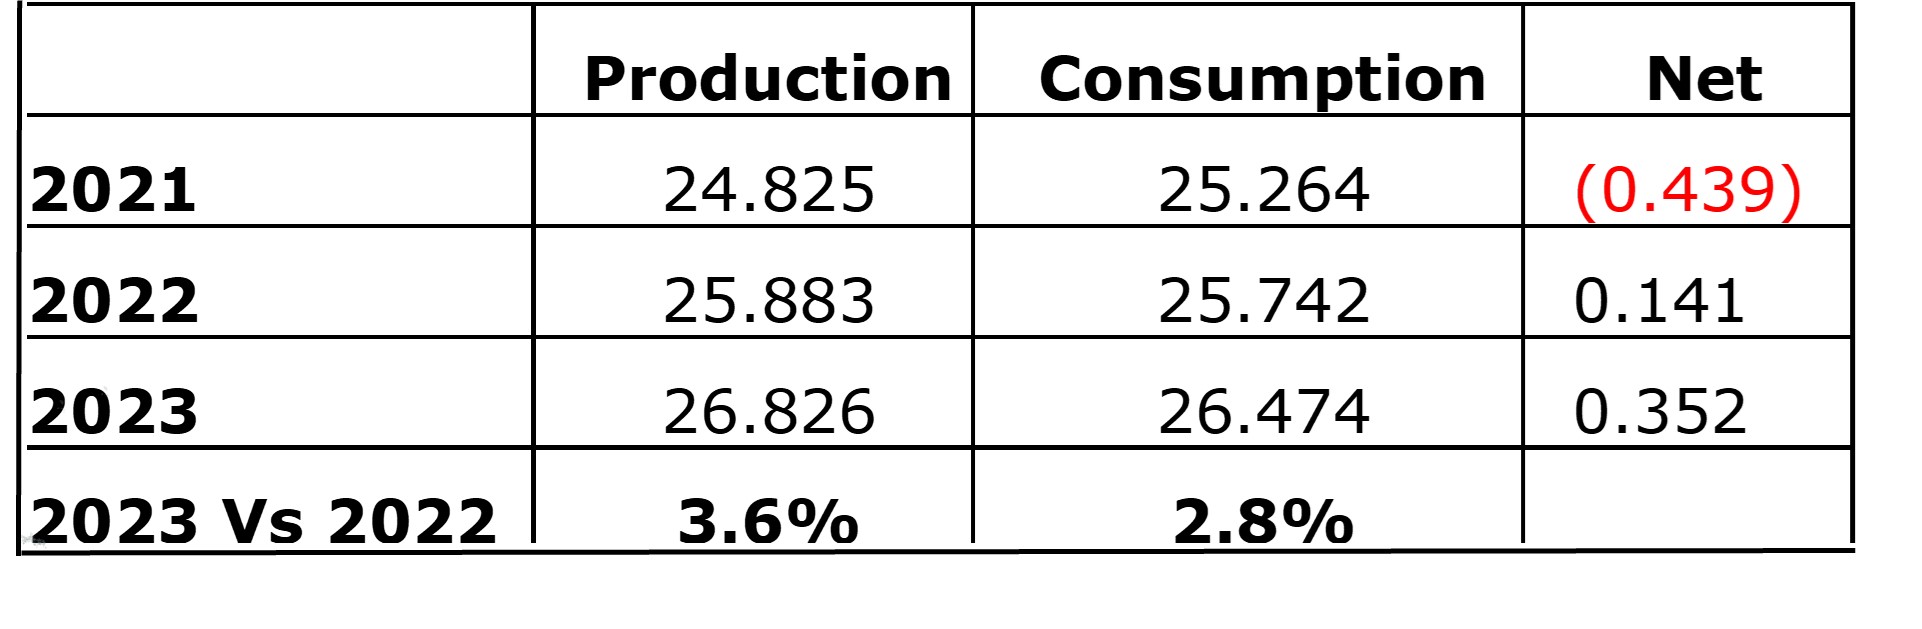 Copper Production vs Consumption April 2022